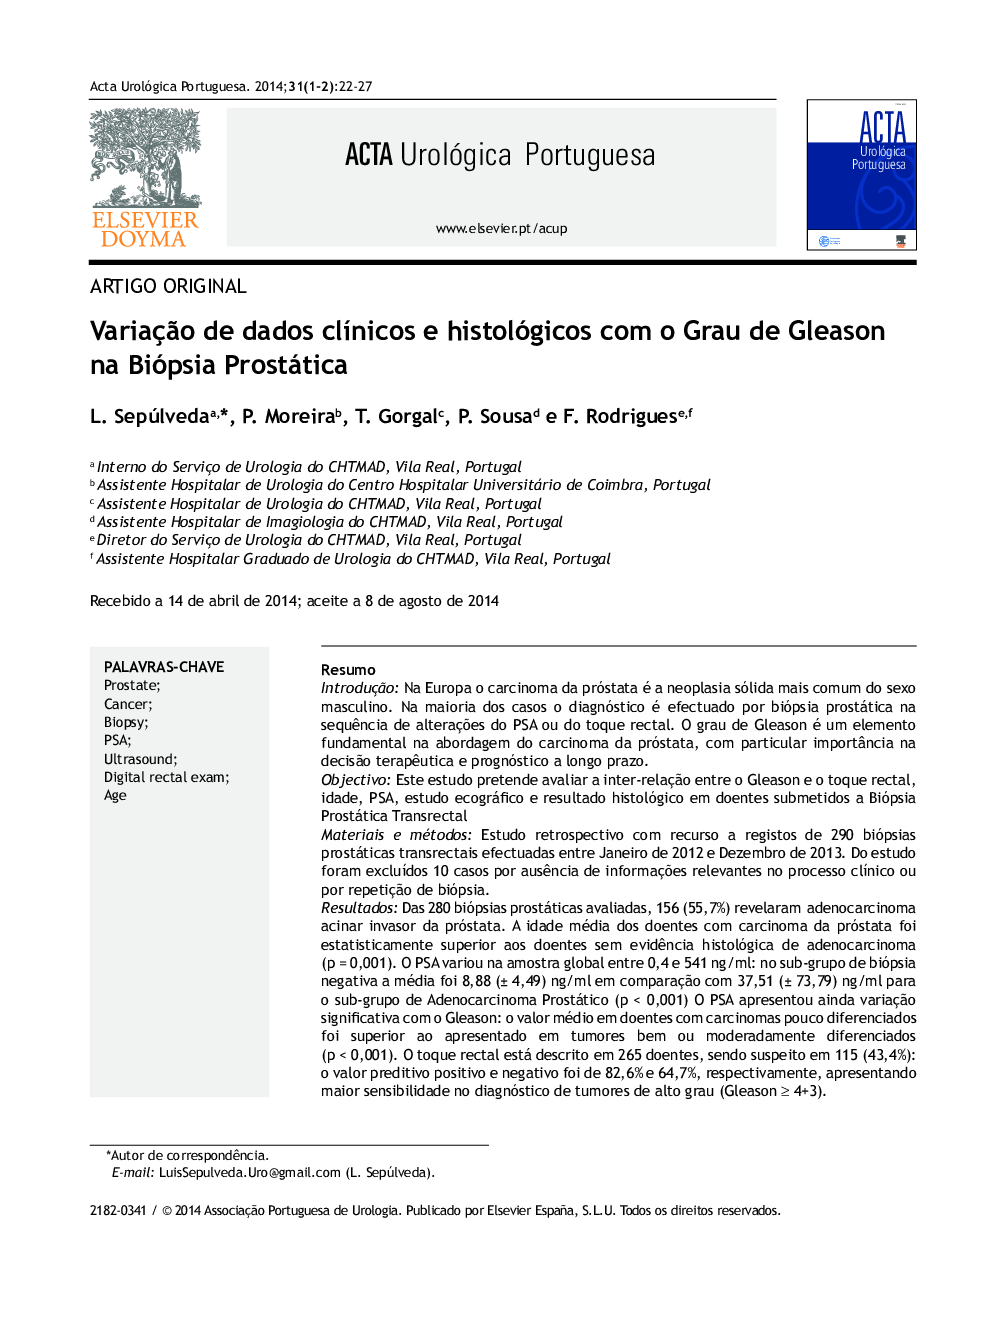 Variação de dados clínicos e histológicos com o Grau de Gleason na Biópsia Prostática